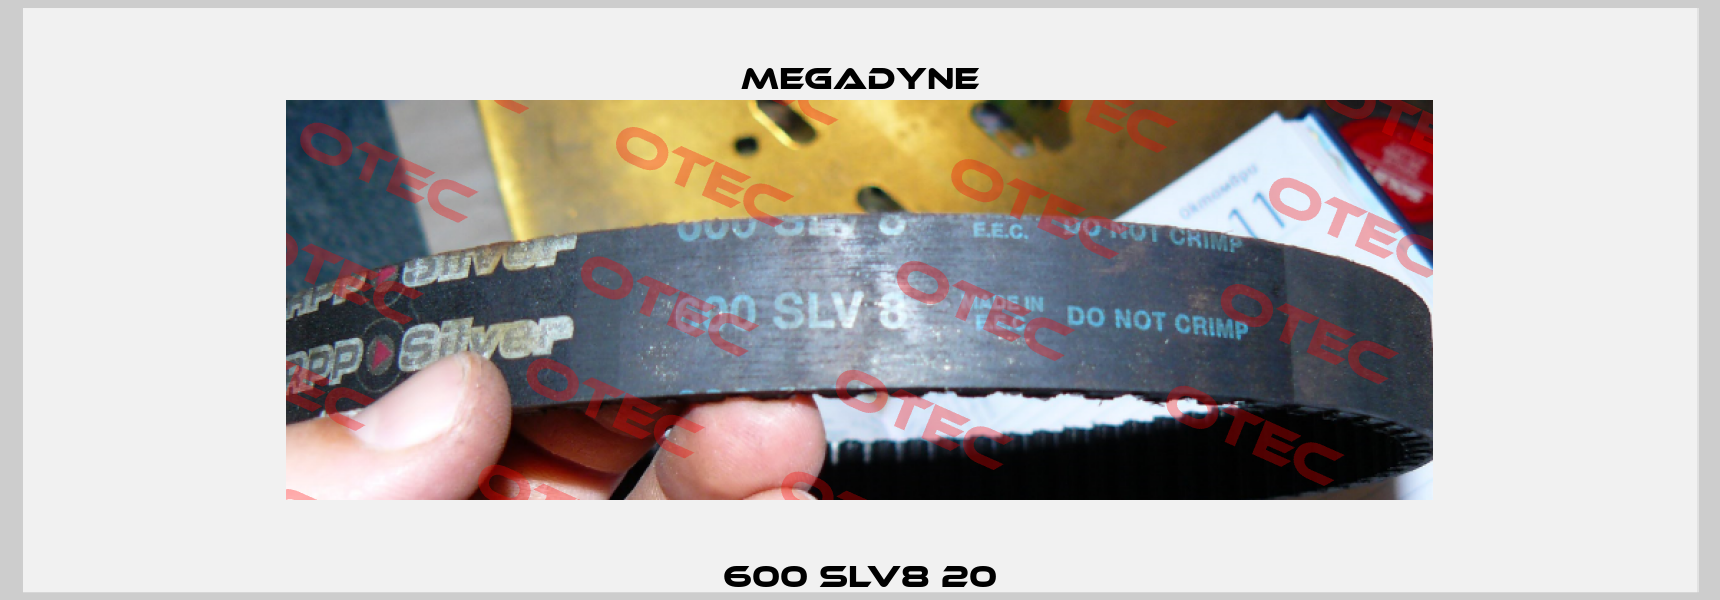 600 SLV8 20 Megadyne